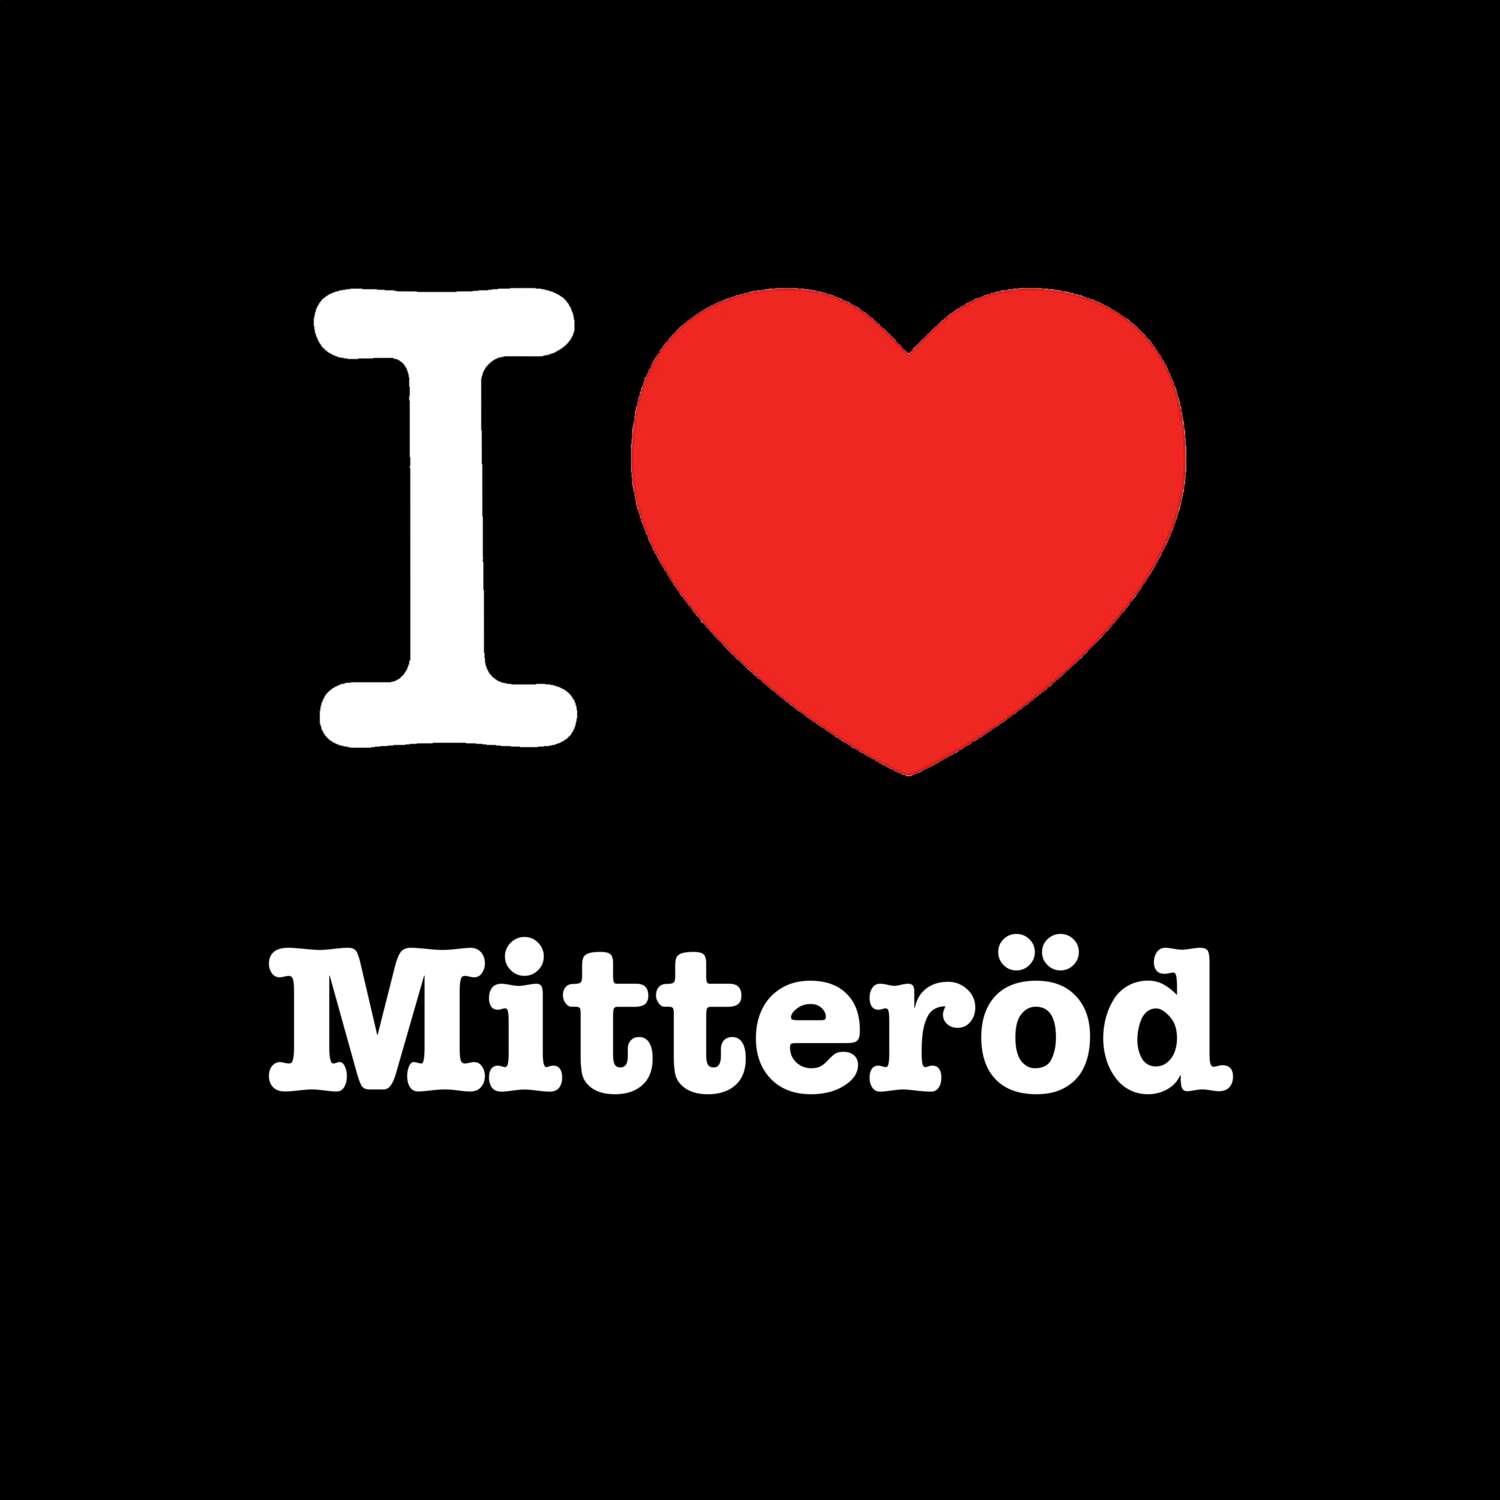 Mitteröd T-Shirt »I love«